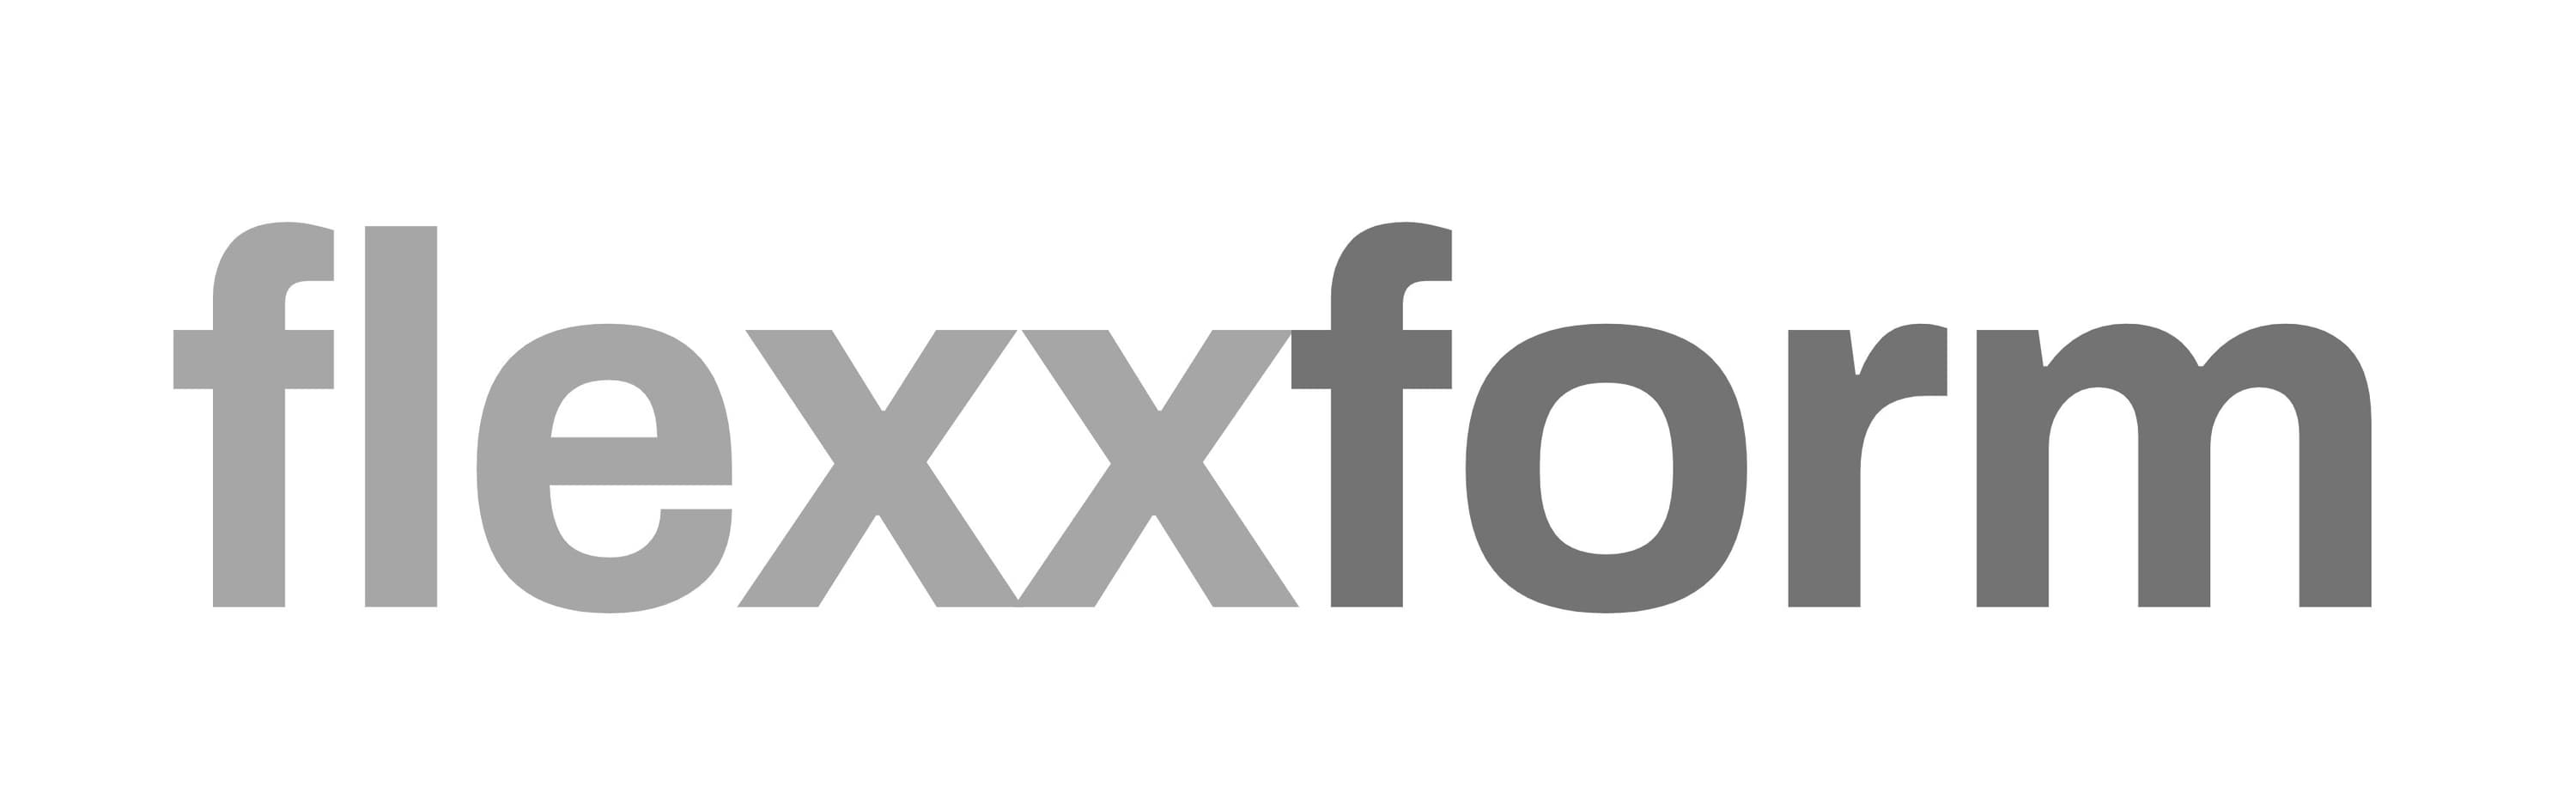 flexxform